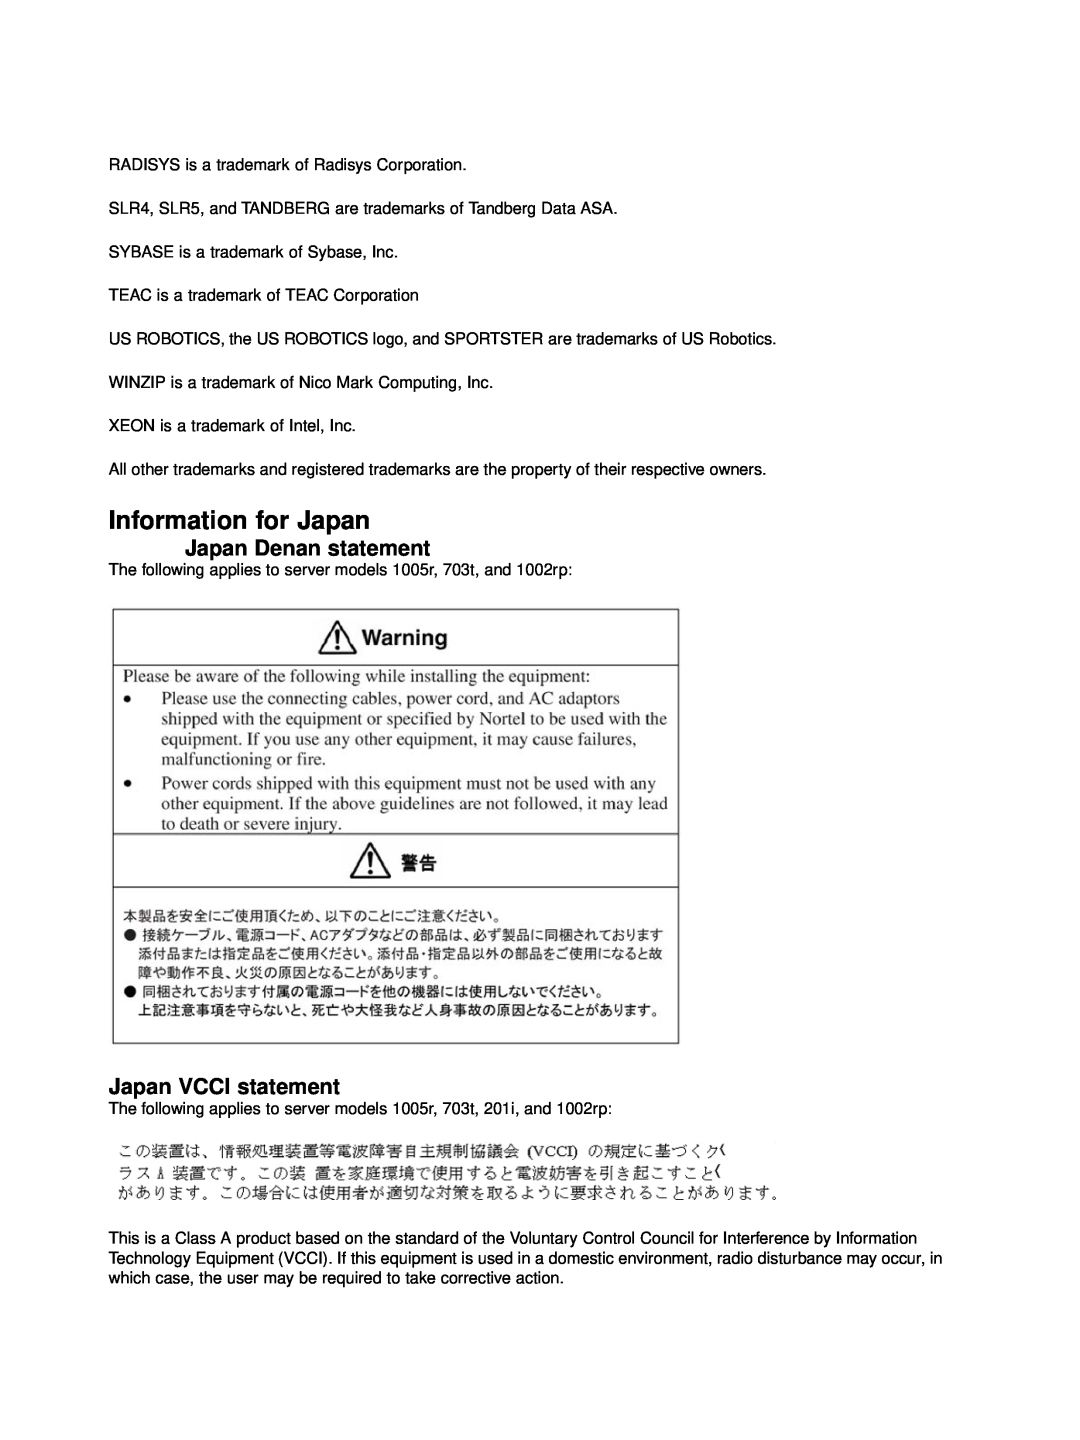 Nortel Networks NN44200-300 manual Information for Japan, Japan Denan statement, Japan VCCI statement 